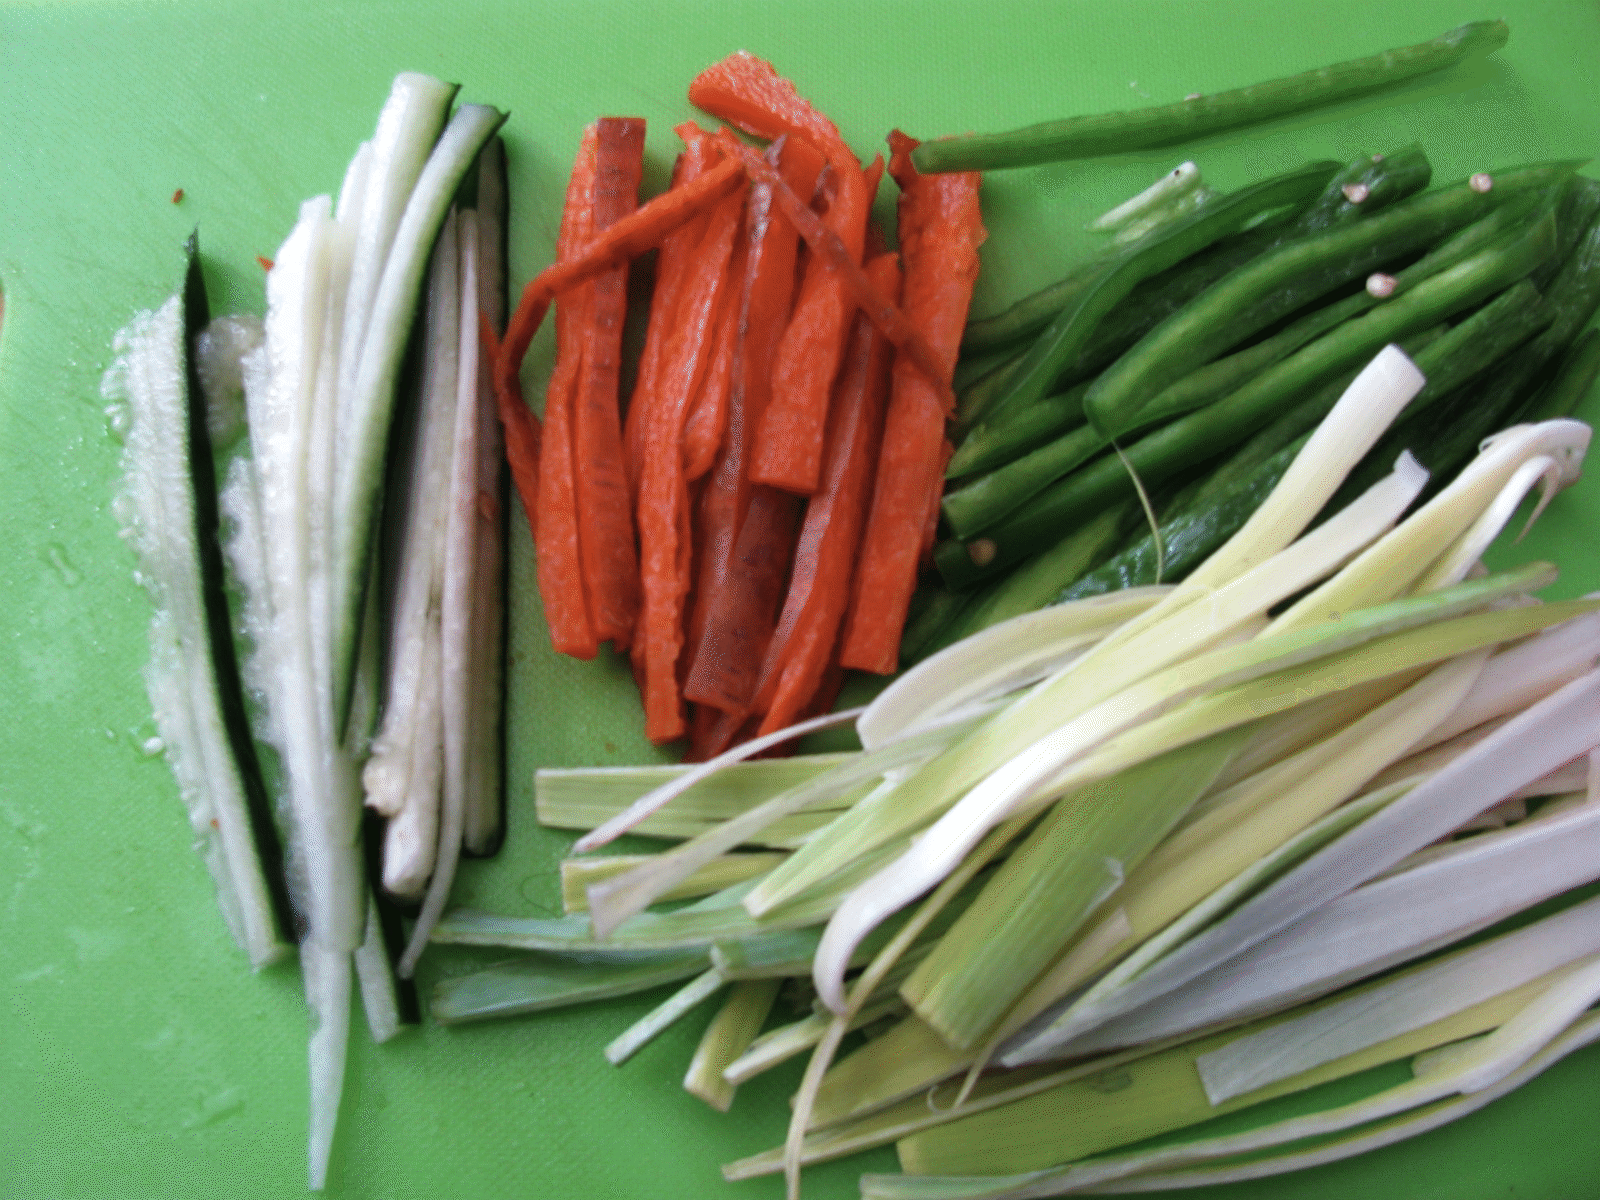 Julienne Cut Vegetables - Leek, Carrot, Anaheim Pepper and Cucumber